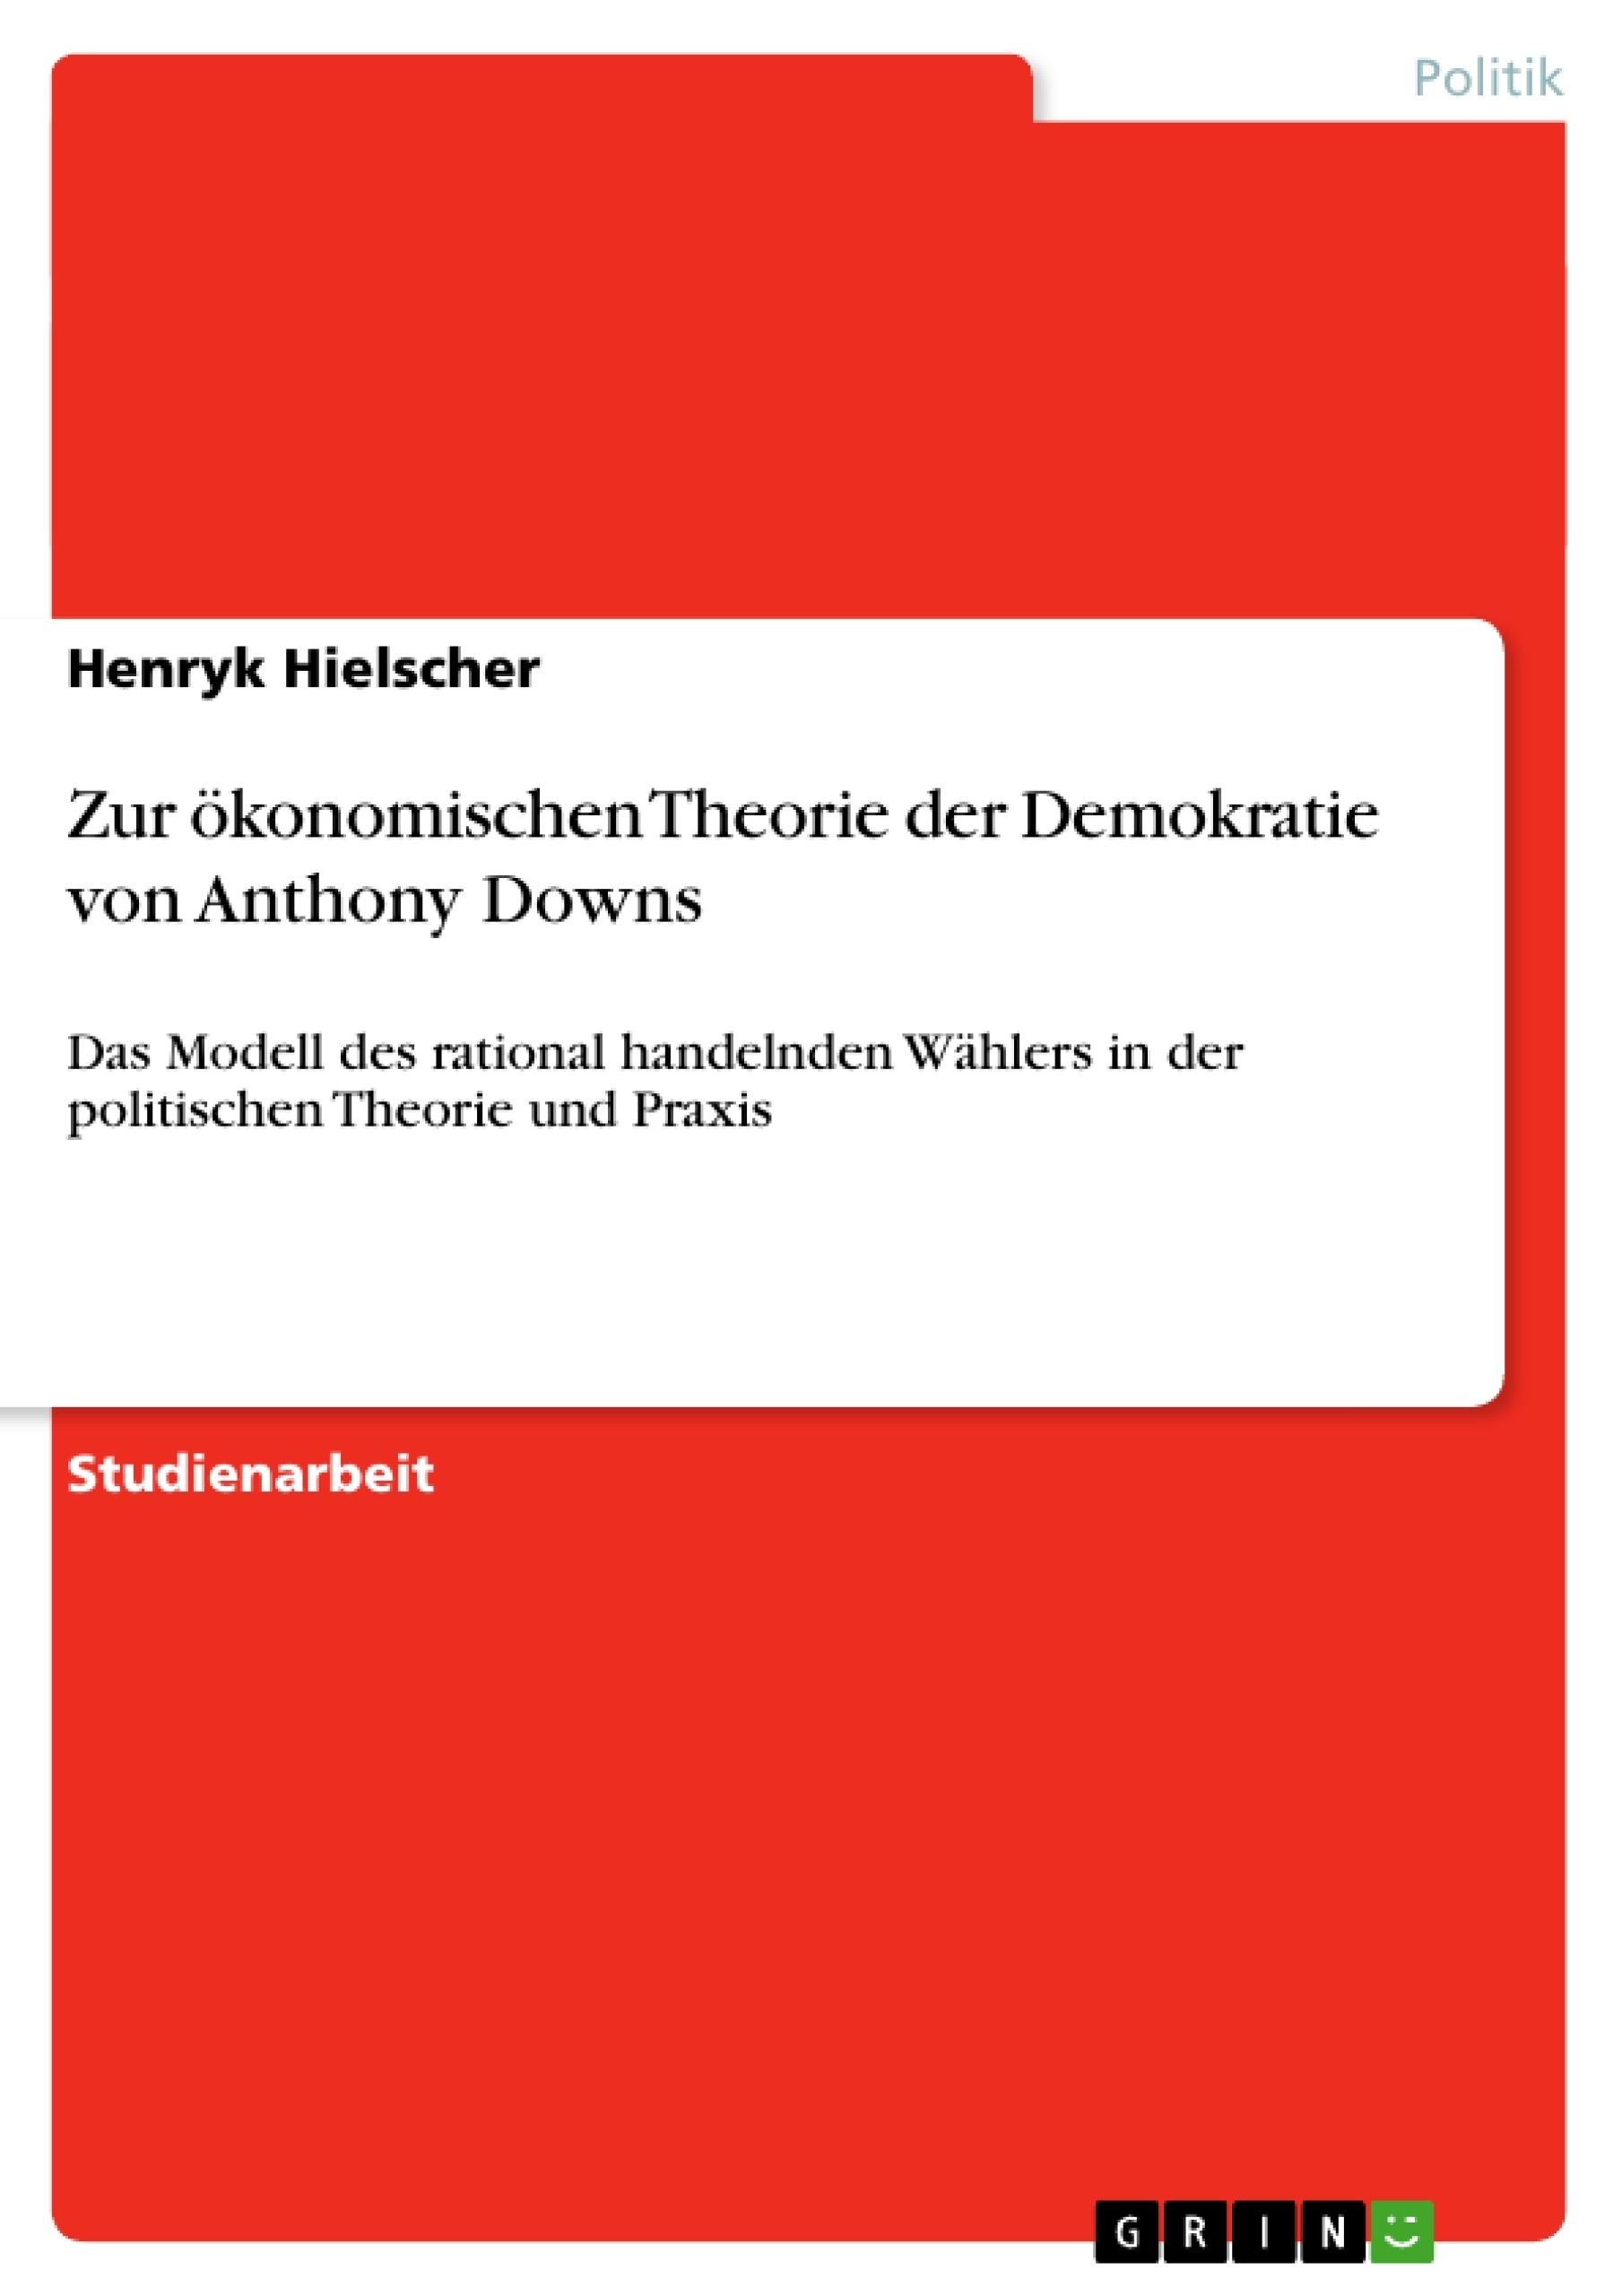 Titre: Zur ökonomischen Theorie der Demokratie von Anthony Downs